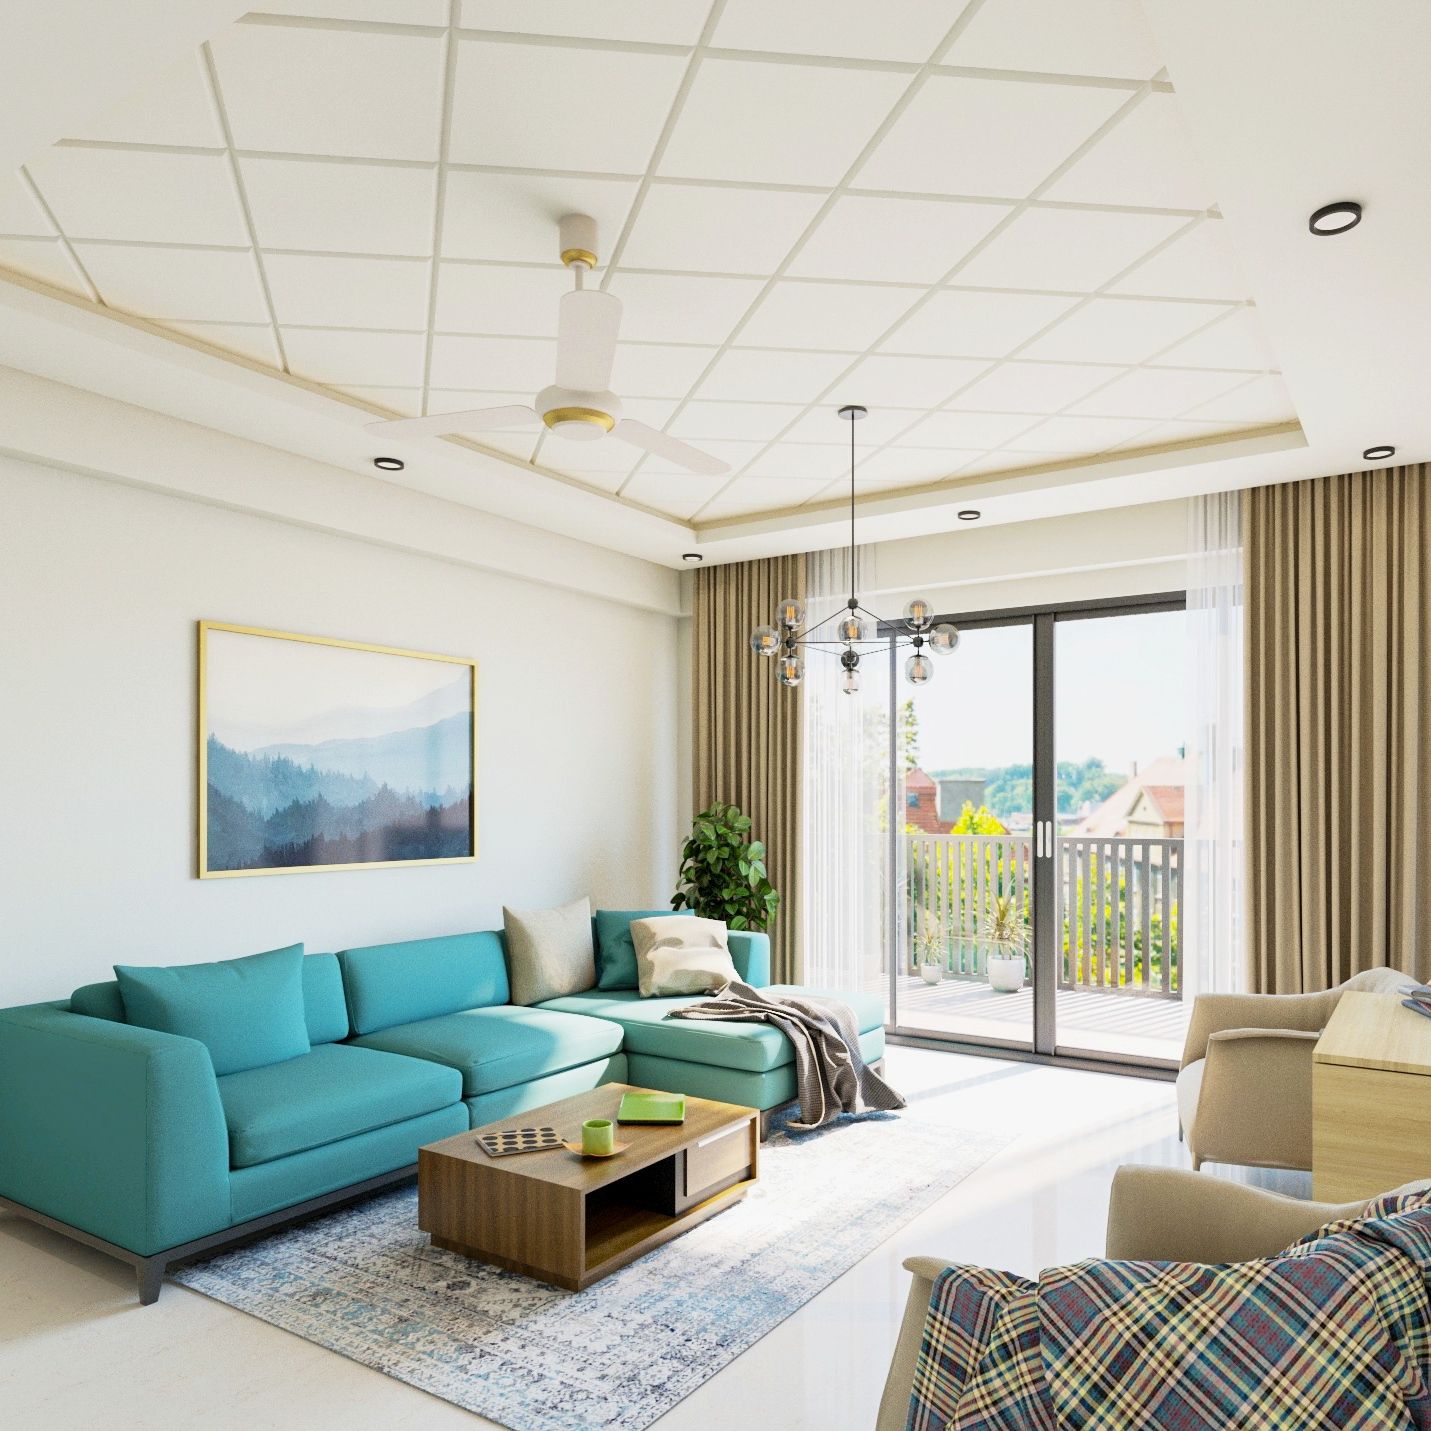 Rectangular White Gypsum Ceiling Design For Living Room